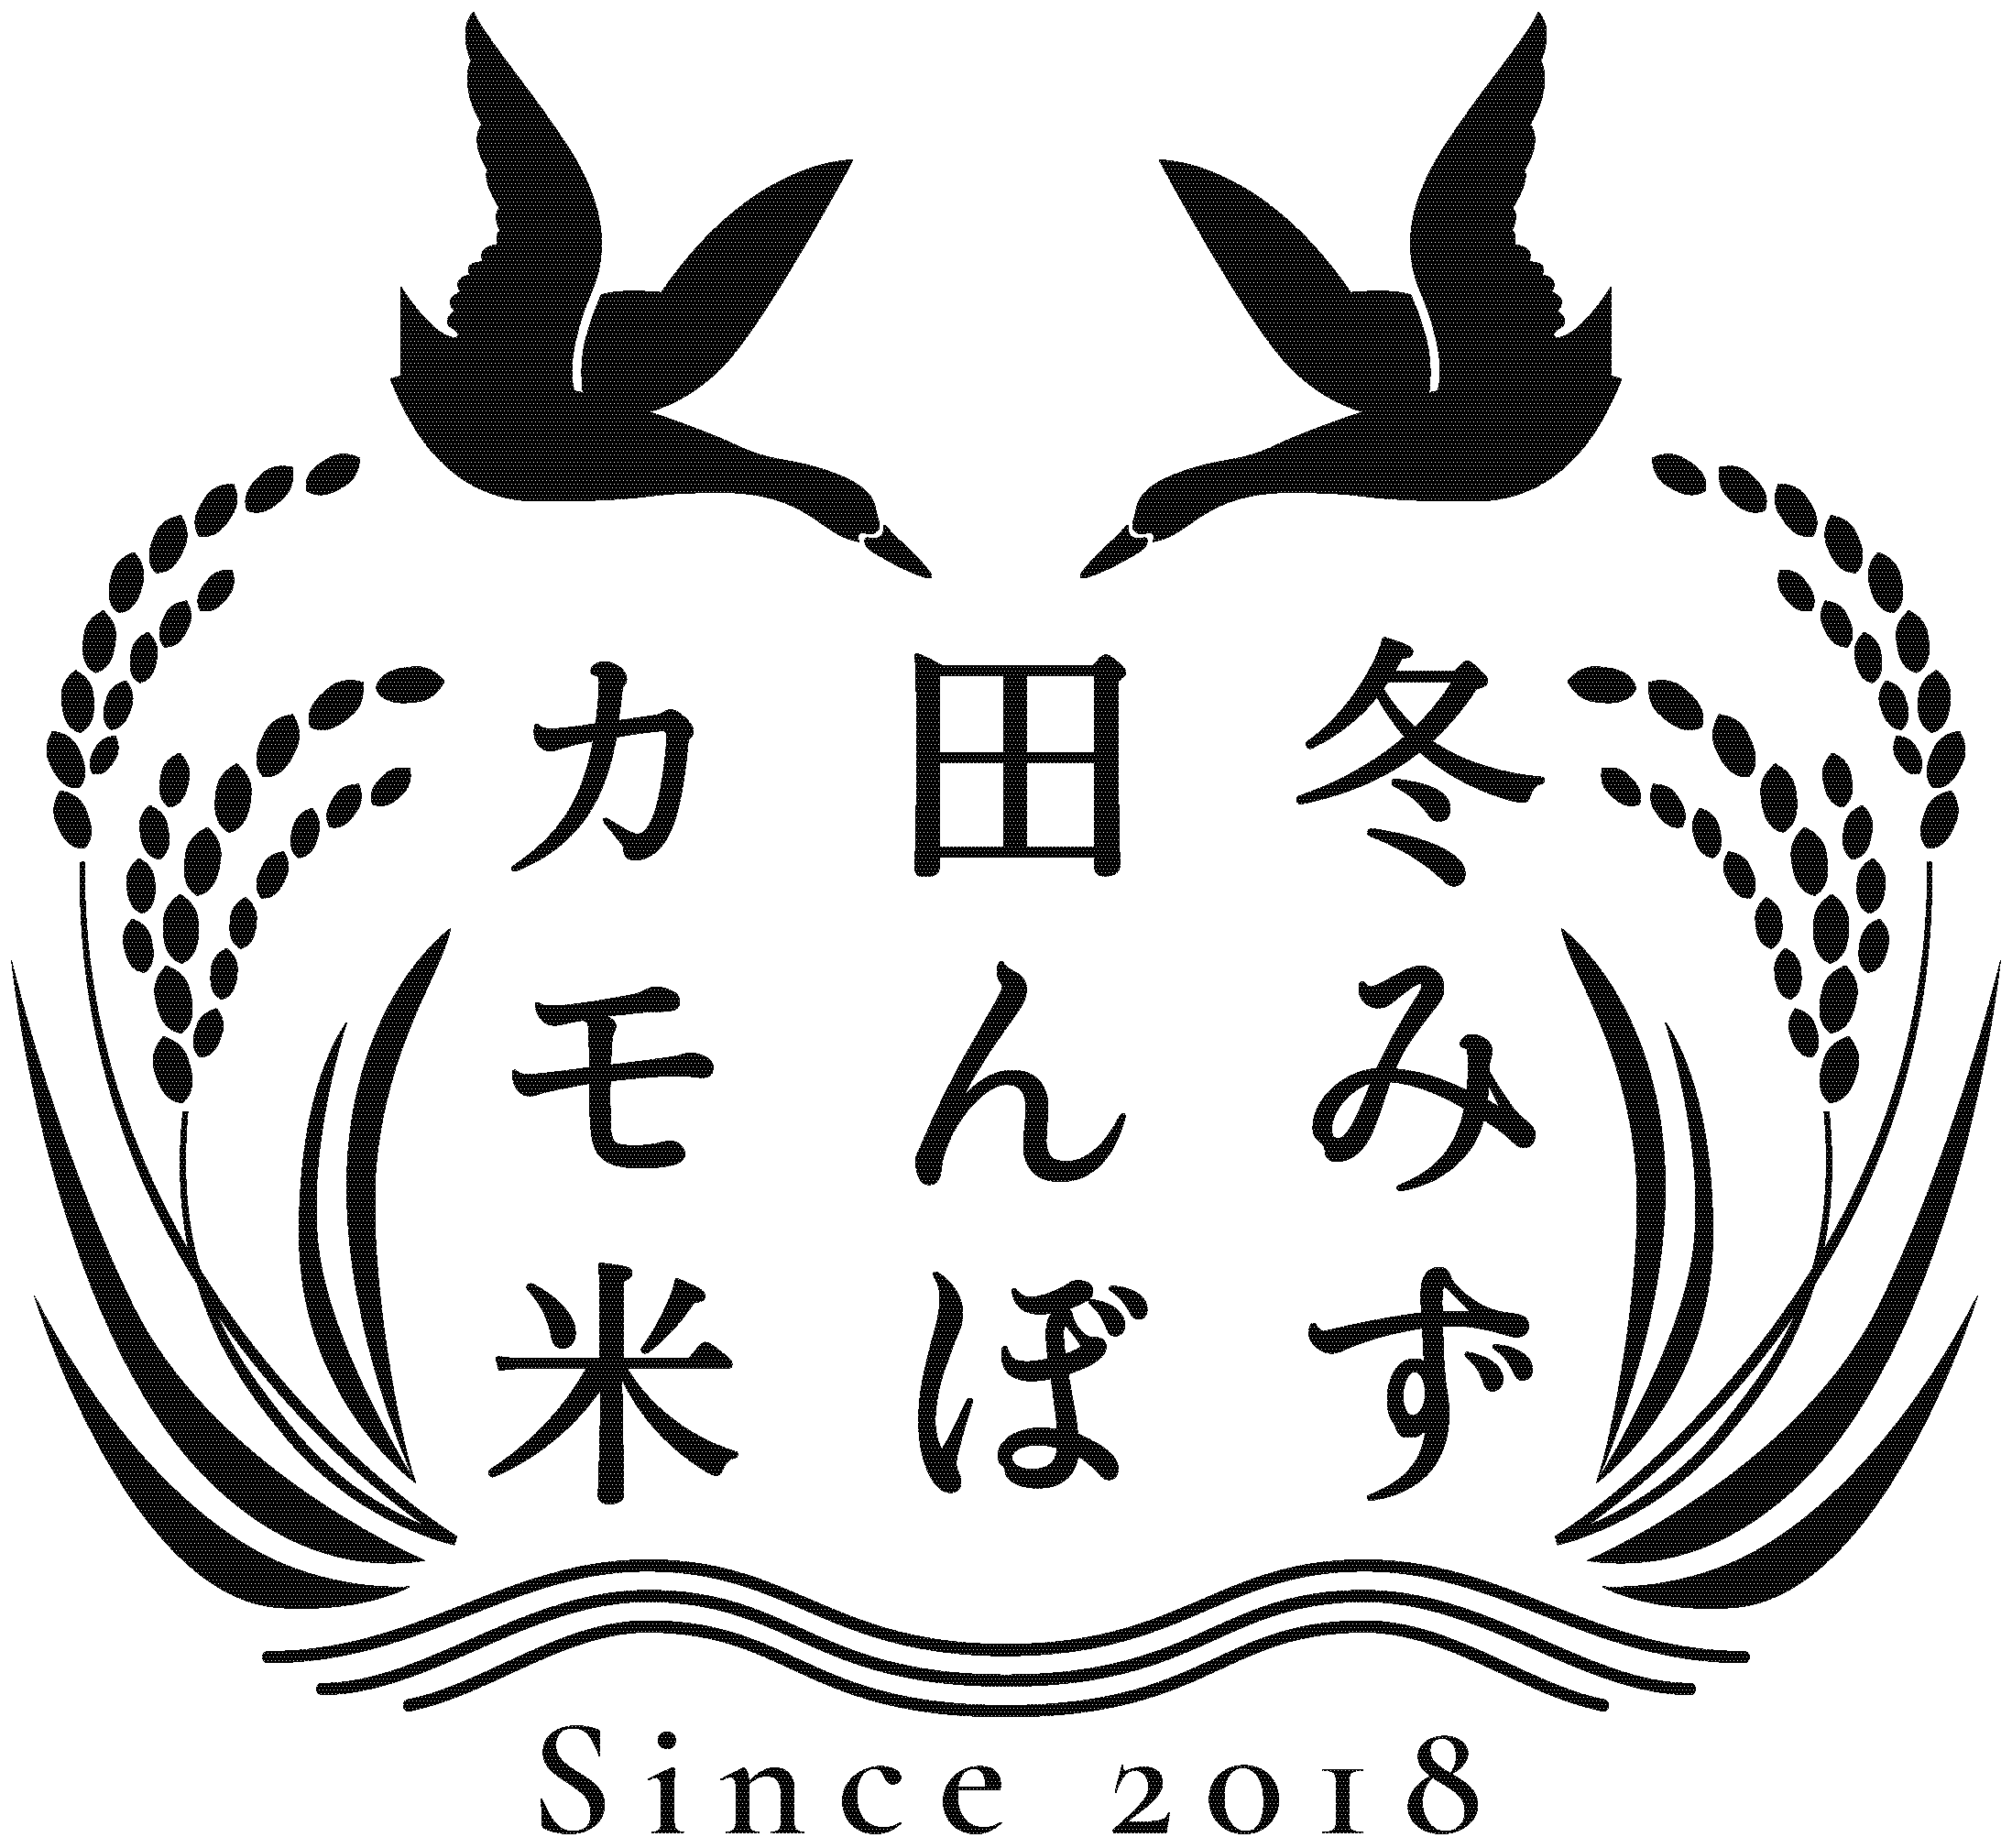 「冬みず田んぼカモ米」のロゴ